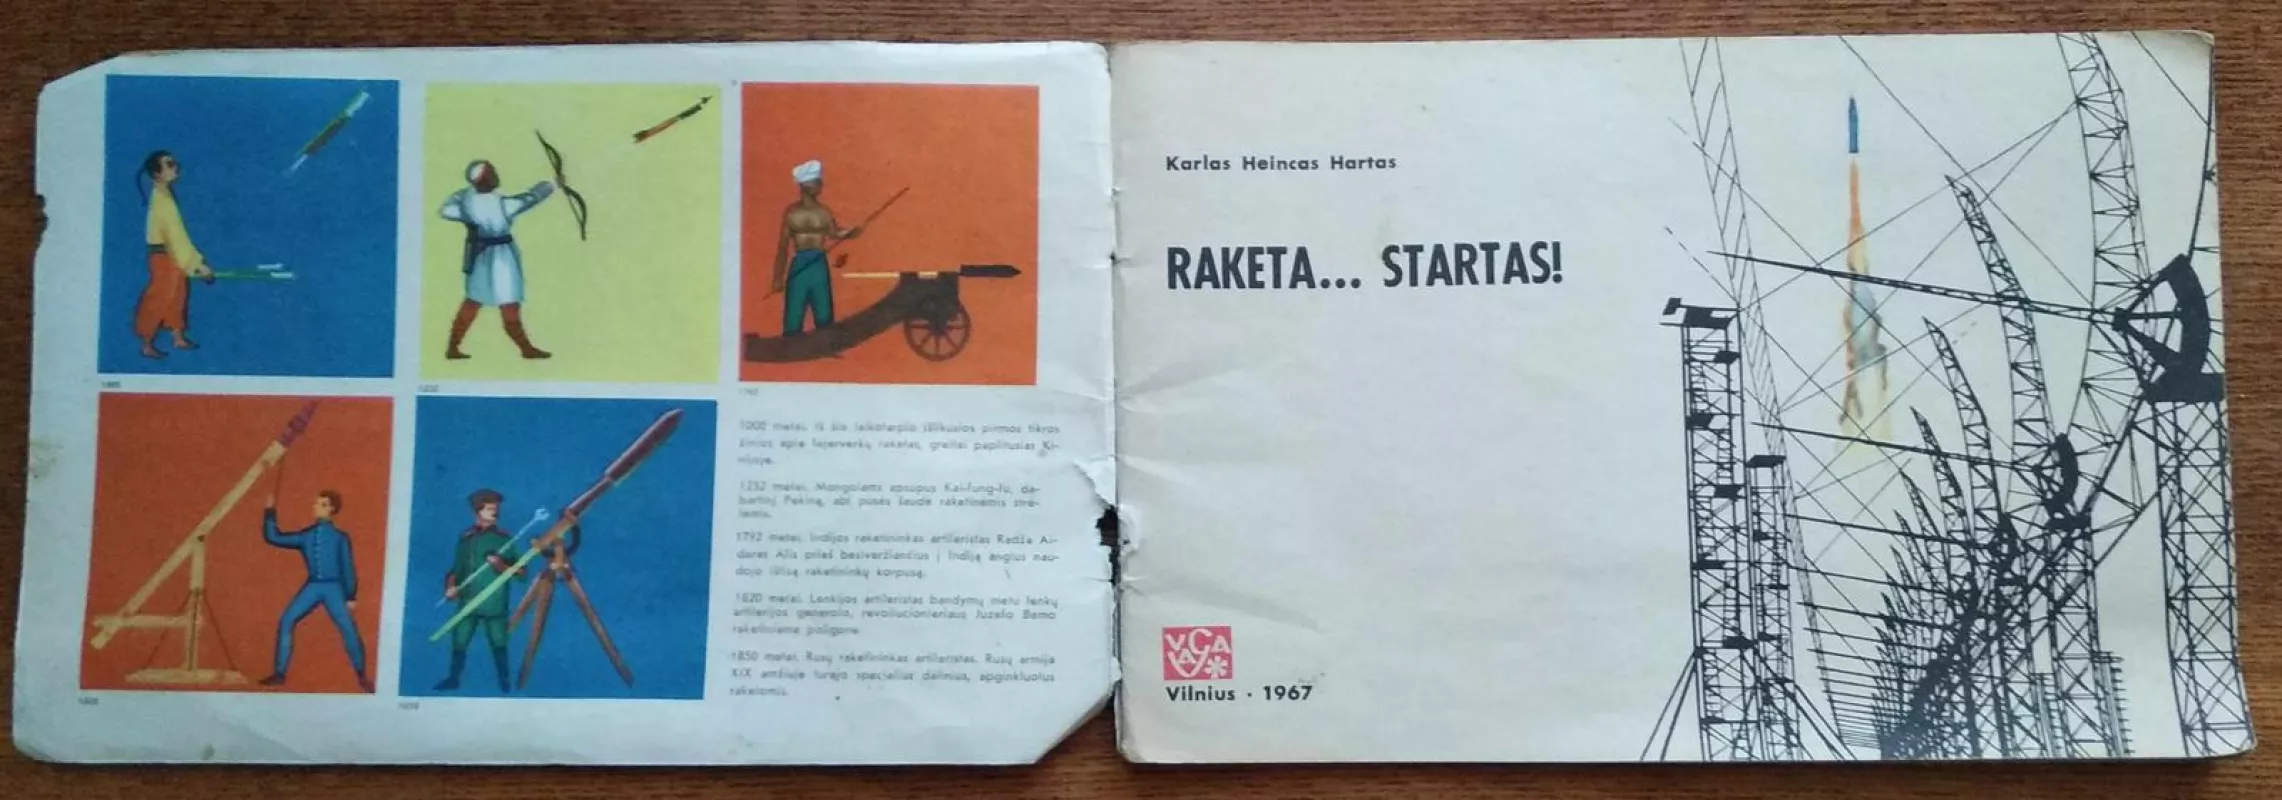 Raketa...startas - Autorių Kolektyvas, knyga 4